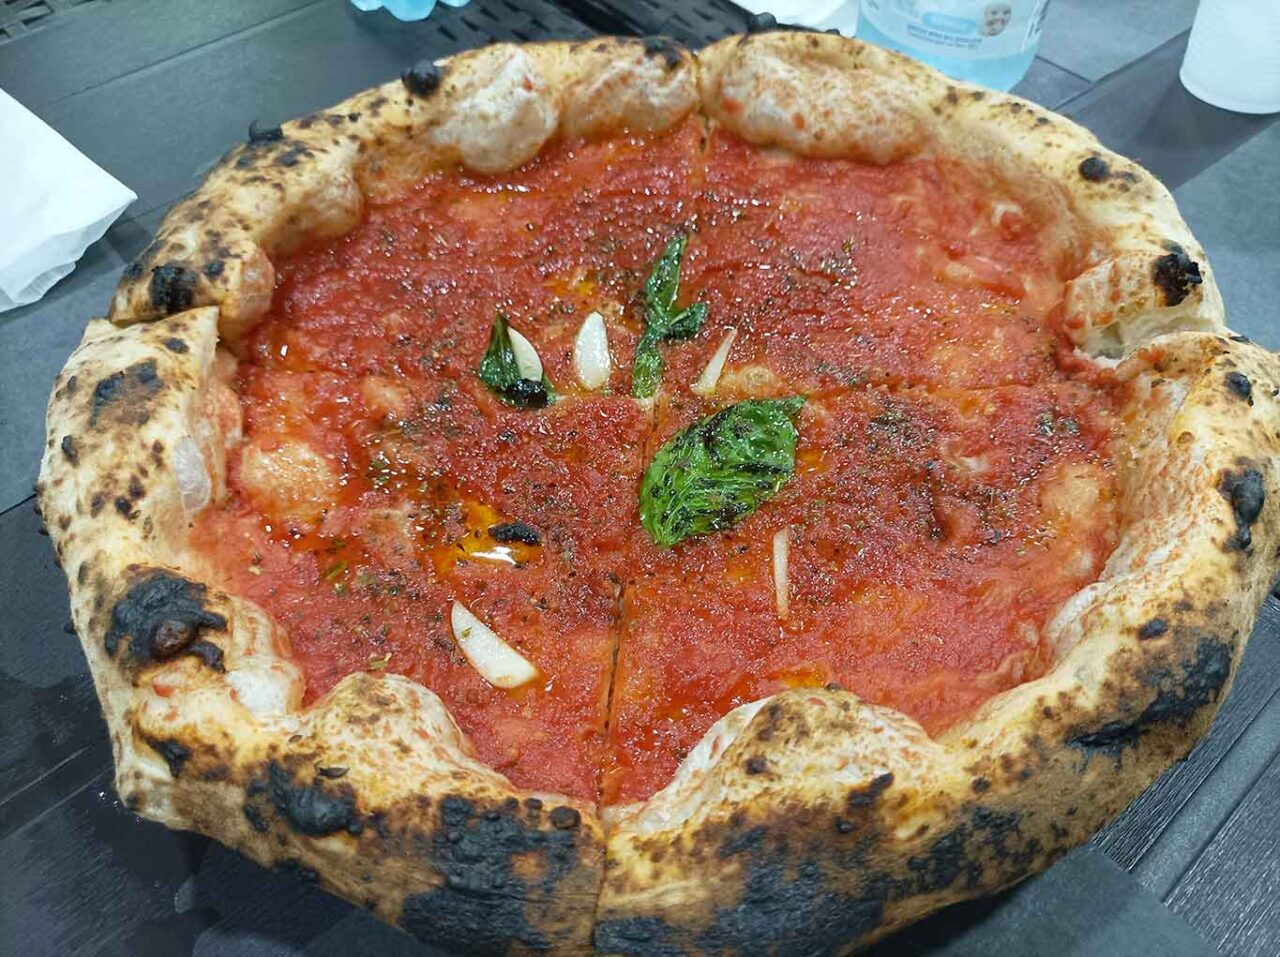 migliori pizze Marinara a Napoli e provincia: A cantinell ro carichiell